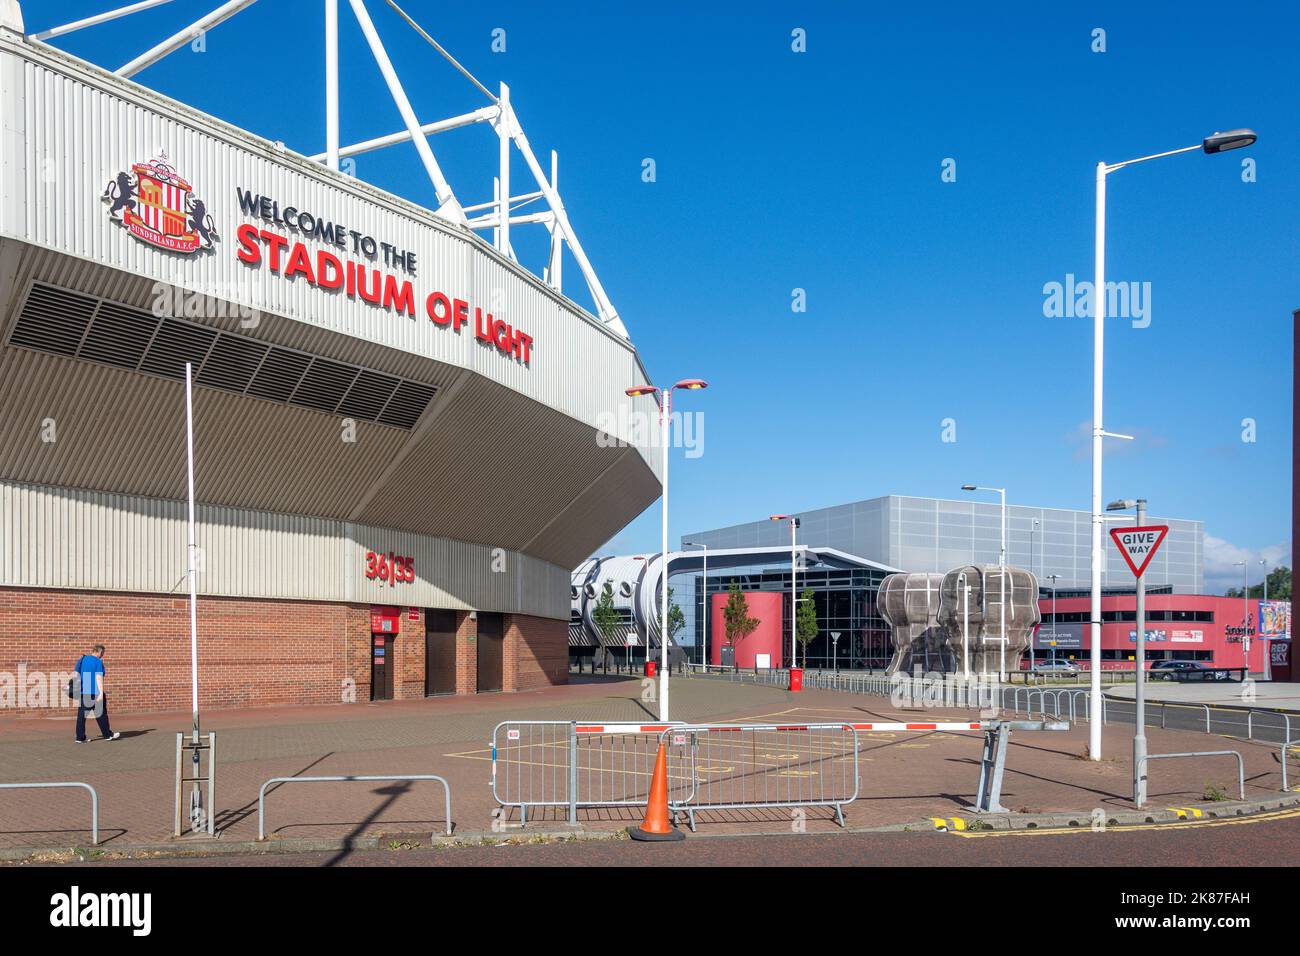 Stadion des Lichts und Sunderland Aquatic Centre, Vaux Brewery Way, Schafhürden, Stadt Sunderland, Tyne und Wear, England, Vereinigtes Königreich Stockfoto